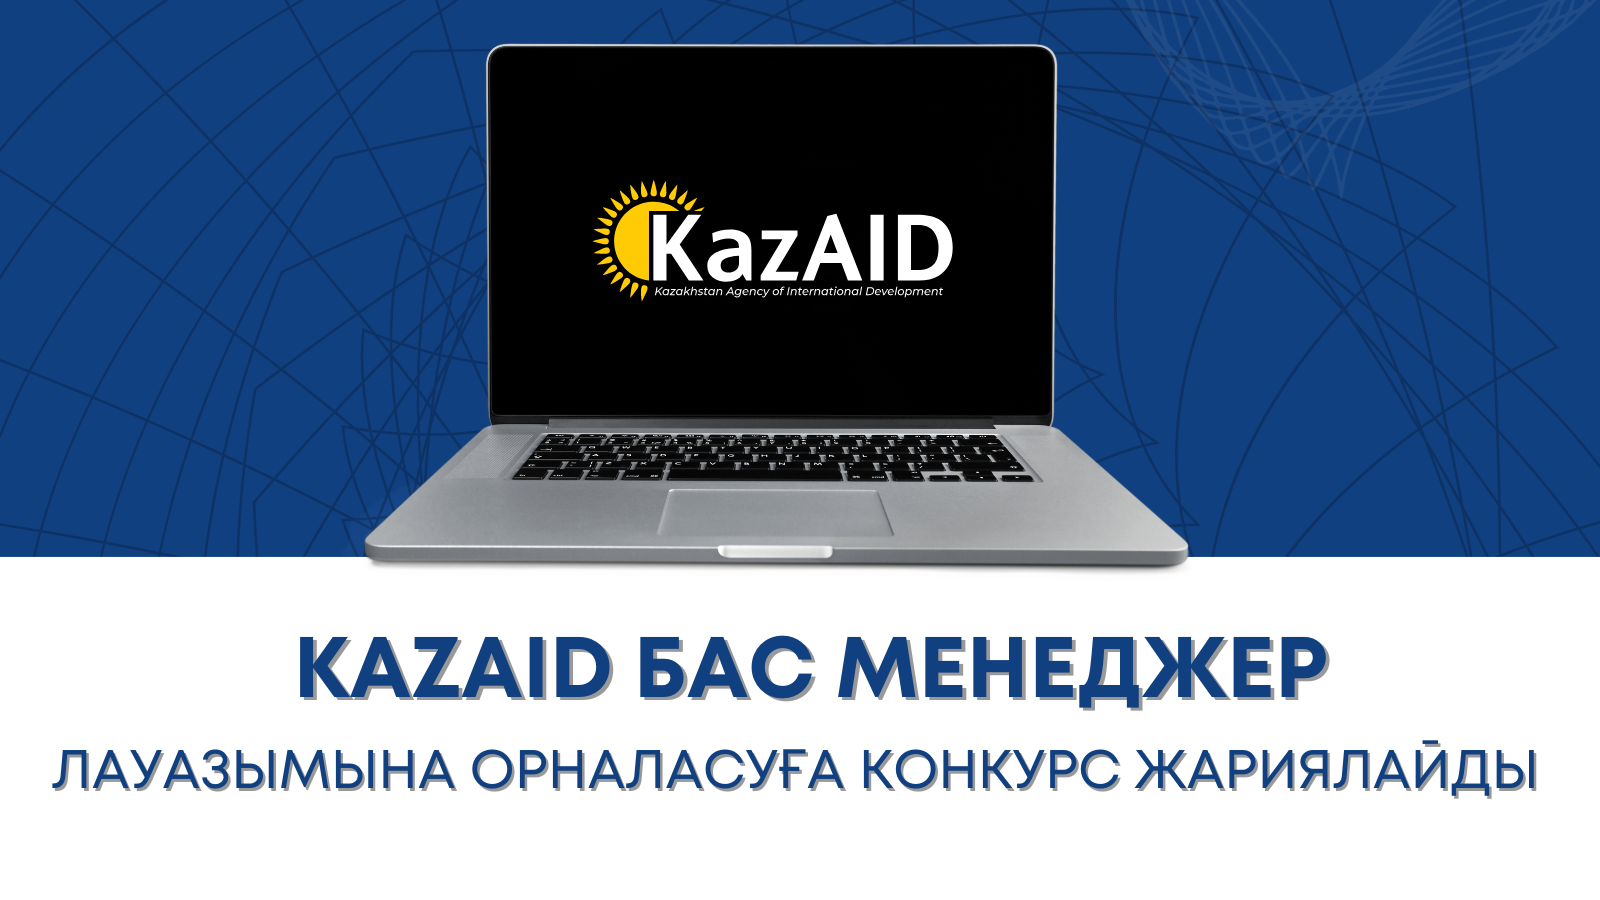 "KazAID "Қазақстандық халықаралық даму агенттігі" КЕАҚ бас менеджердің бос лауазымына орналасуға конкурс жариялайды